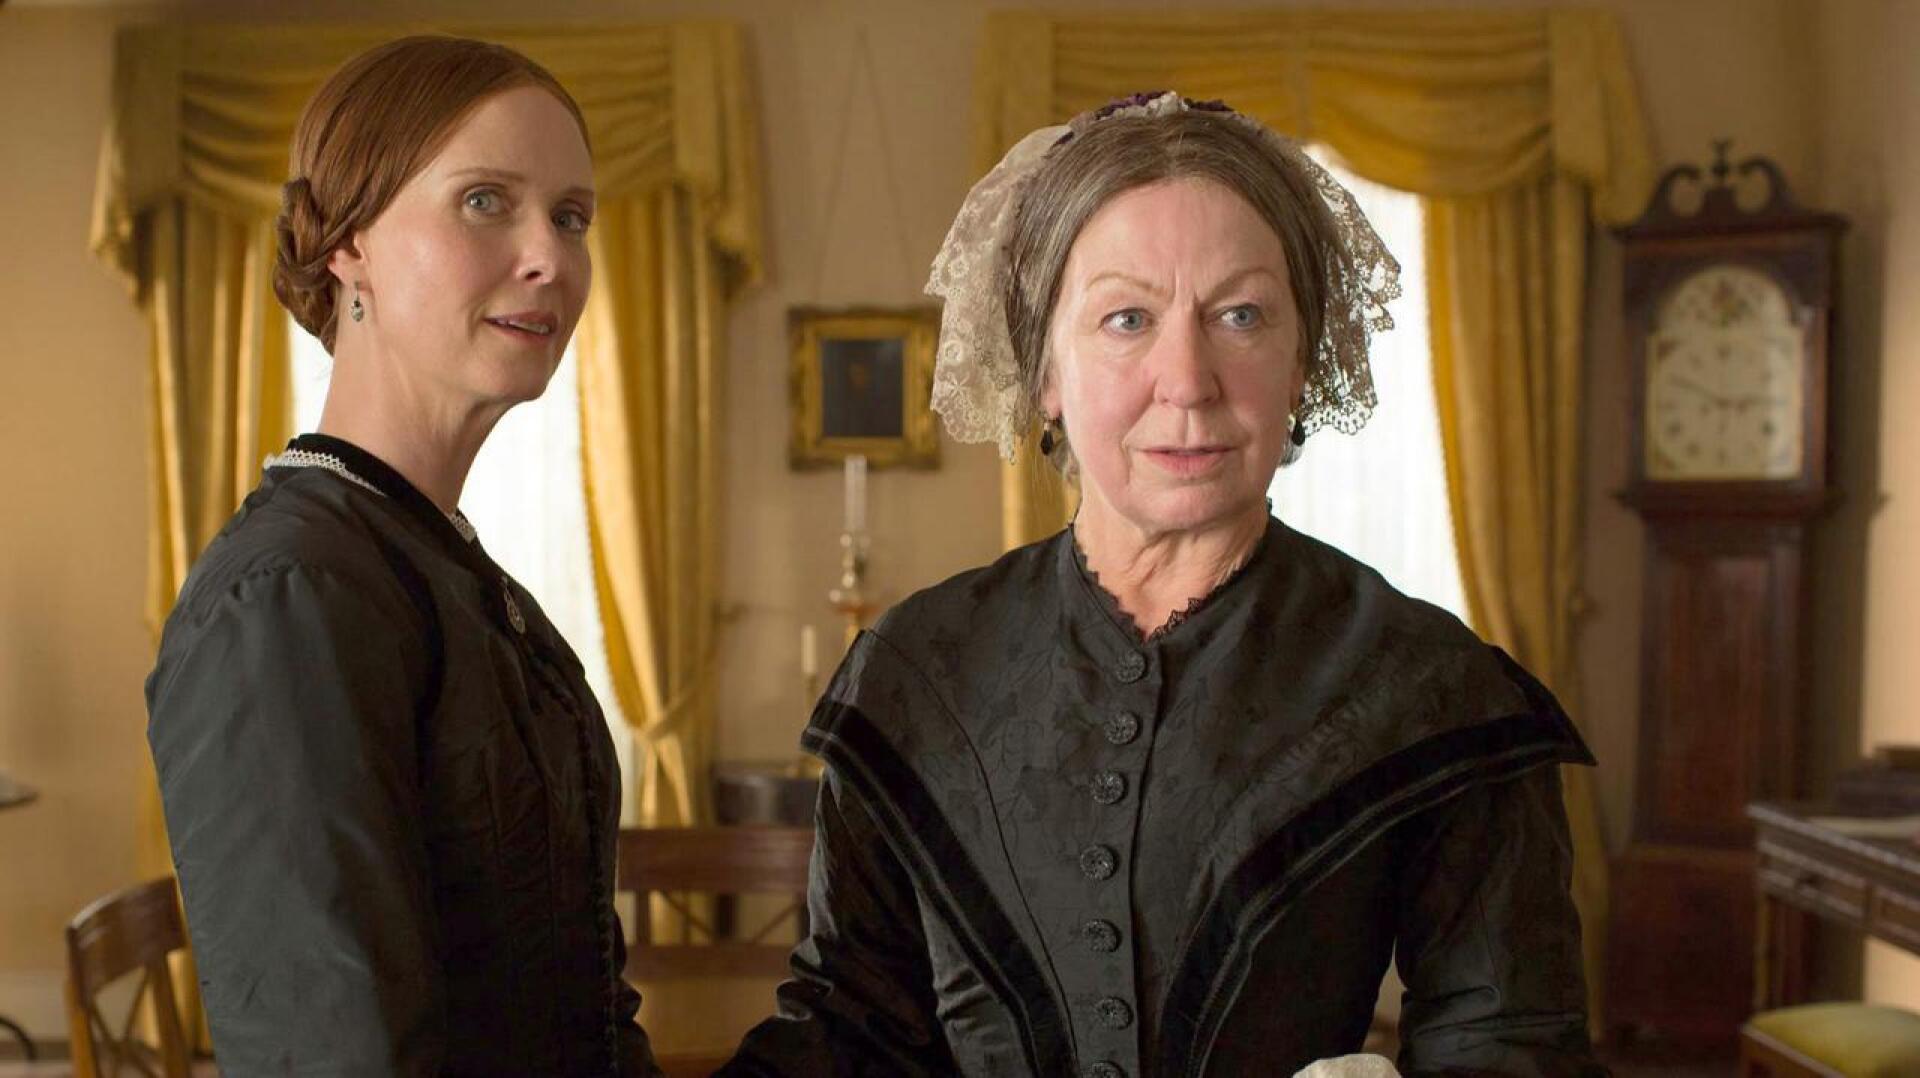 Kaksi Emilyä. Cynthia Nixon esittää sähäkkää runoilija Emily Dickinsonia ja Joanna Bacon melankolista äitiä, Emily Norcrossia. 